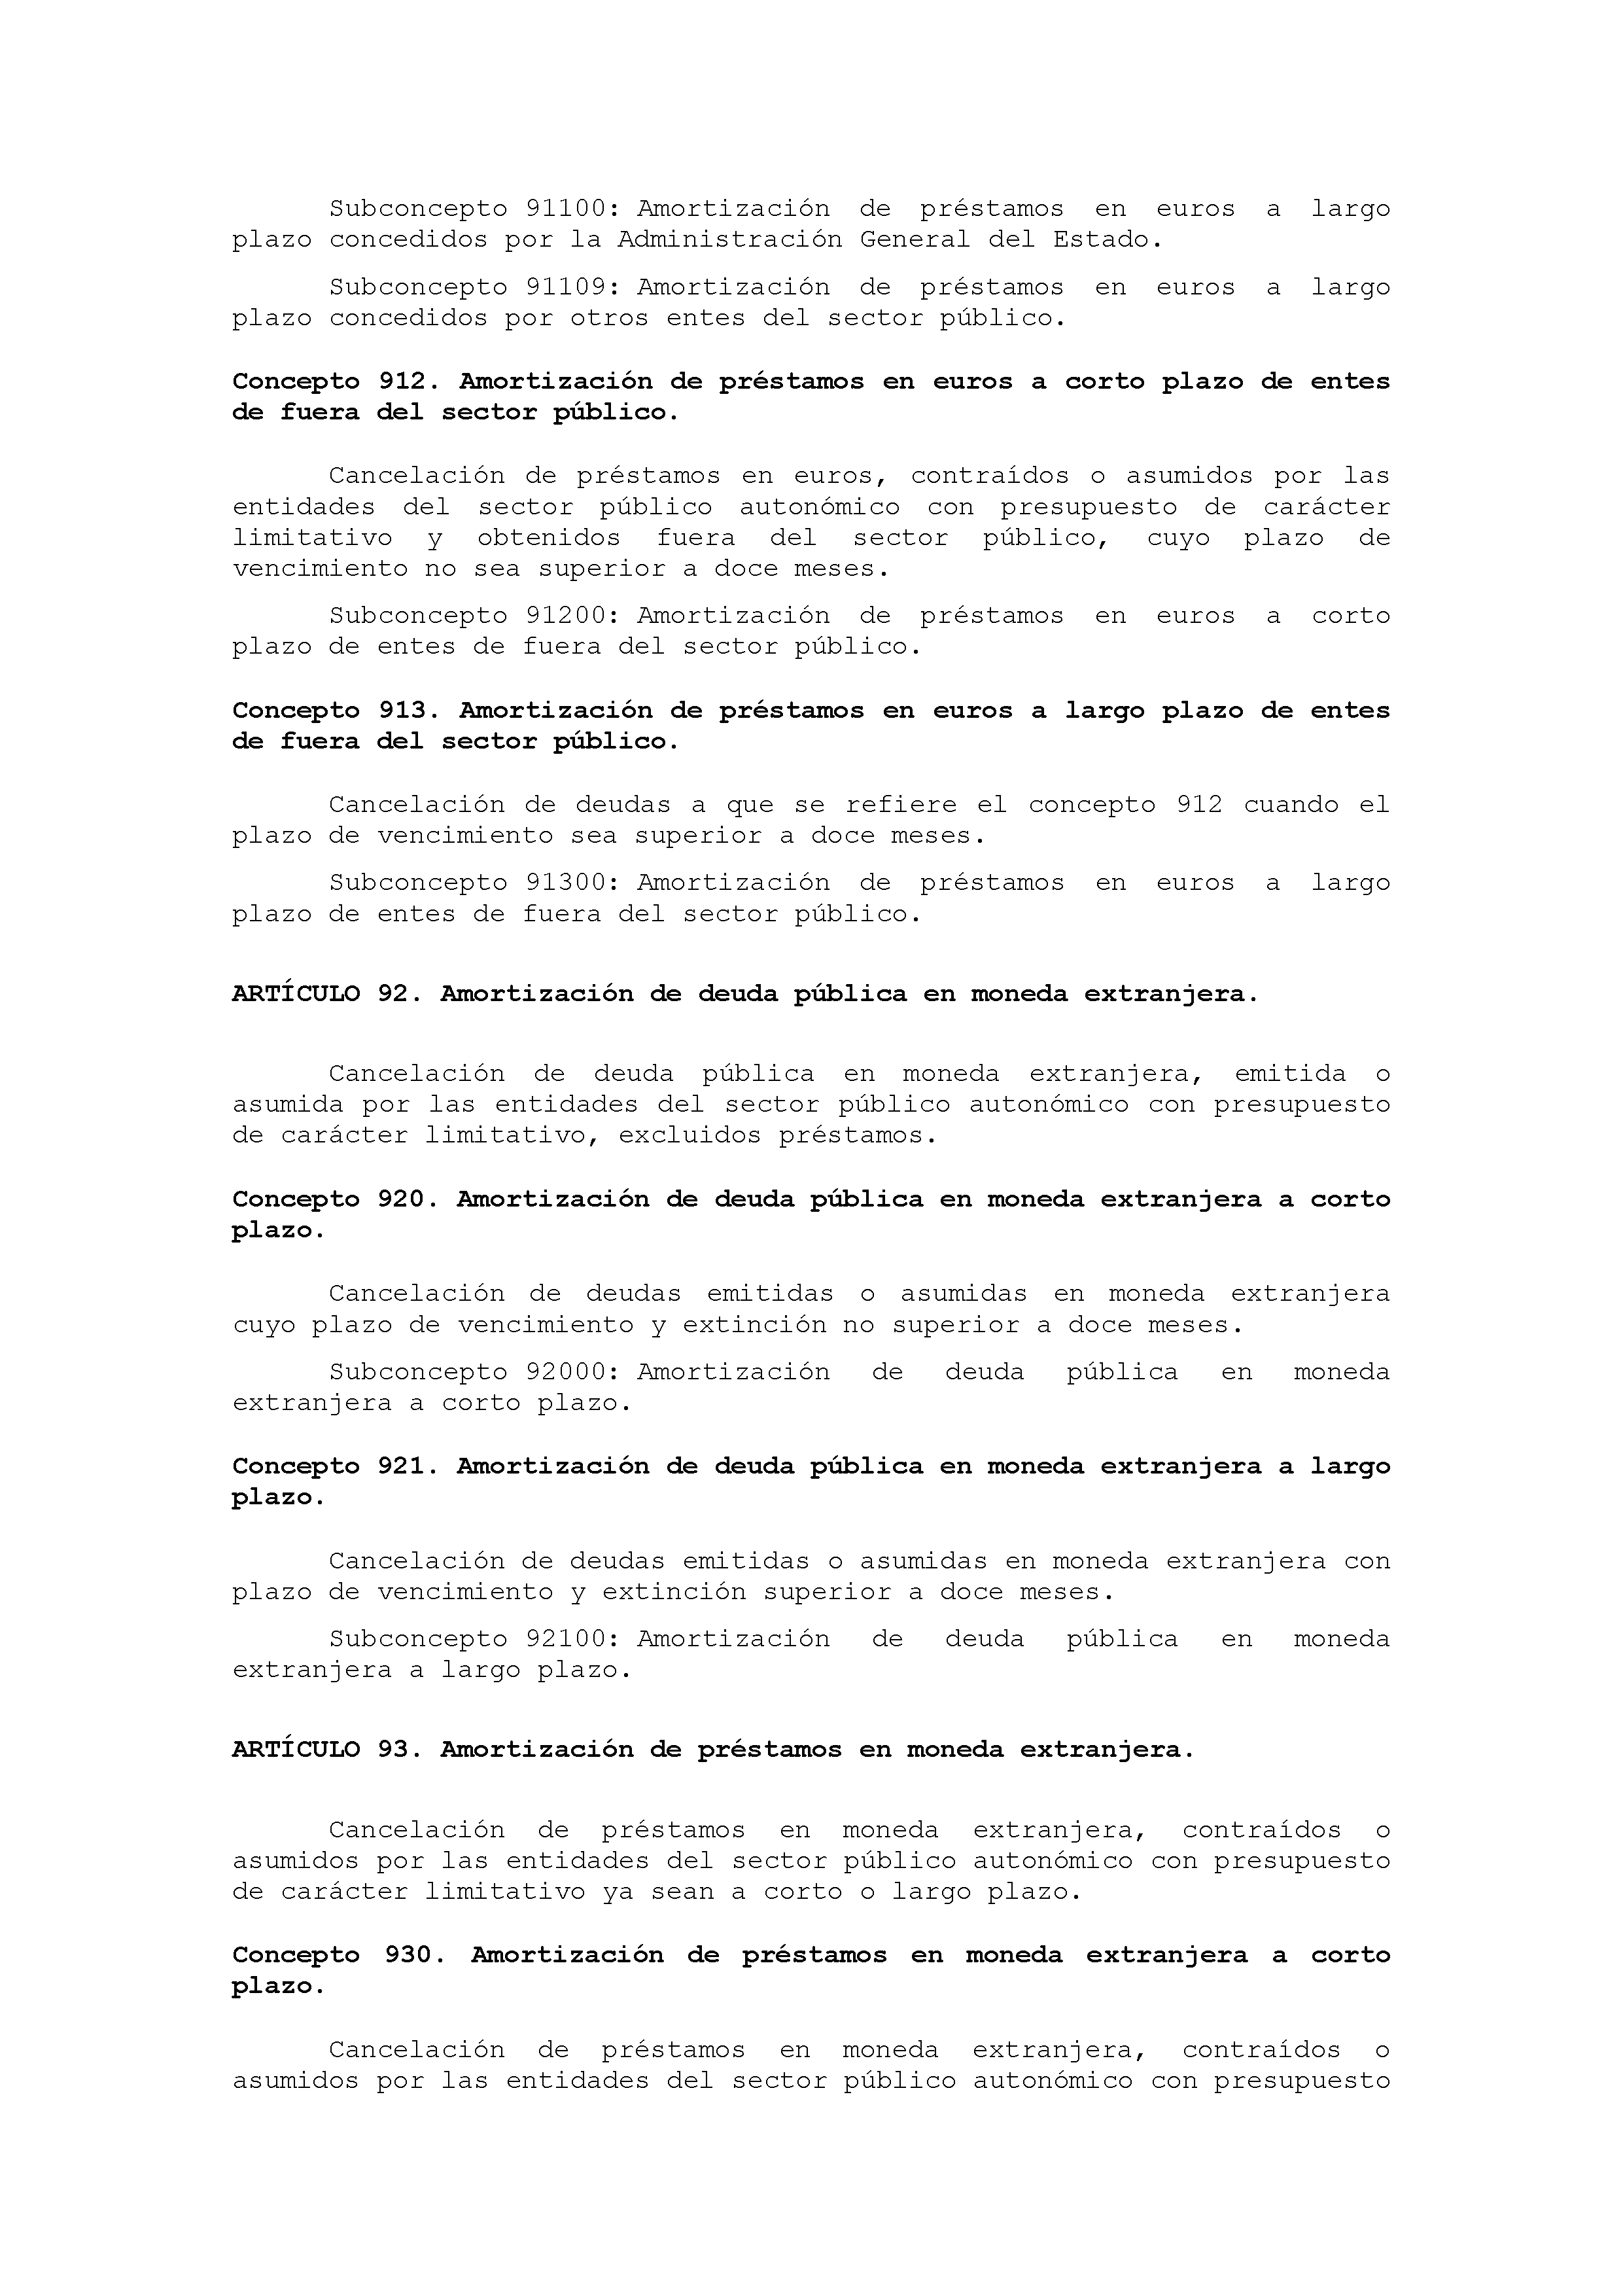 ANEXO IX CÓDIGO DE LA CLASIFICACIÓN ECONÓMICA DE LOS GASTOS PÚBLICOS Pag 47